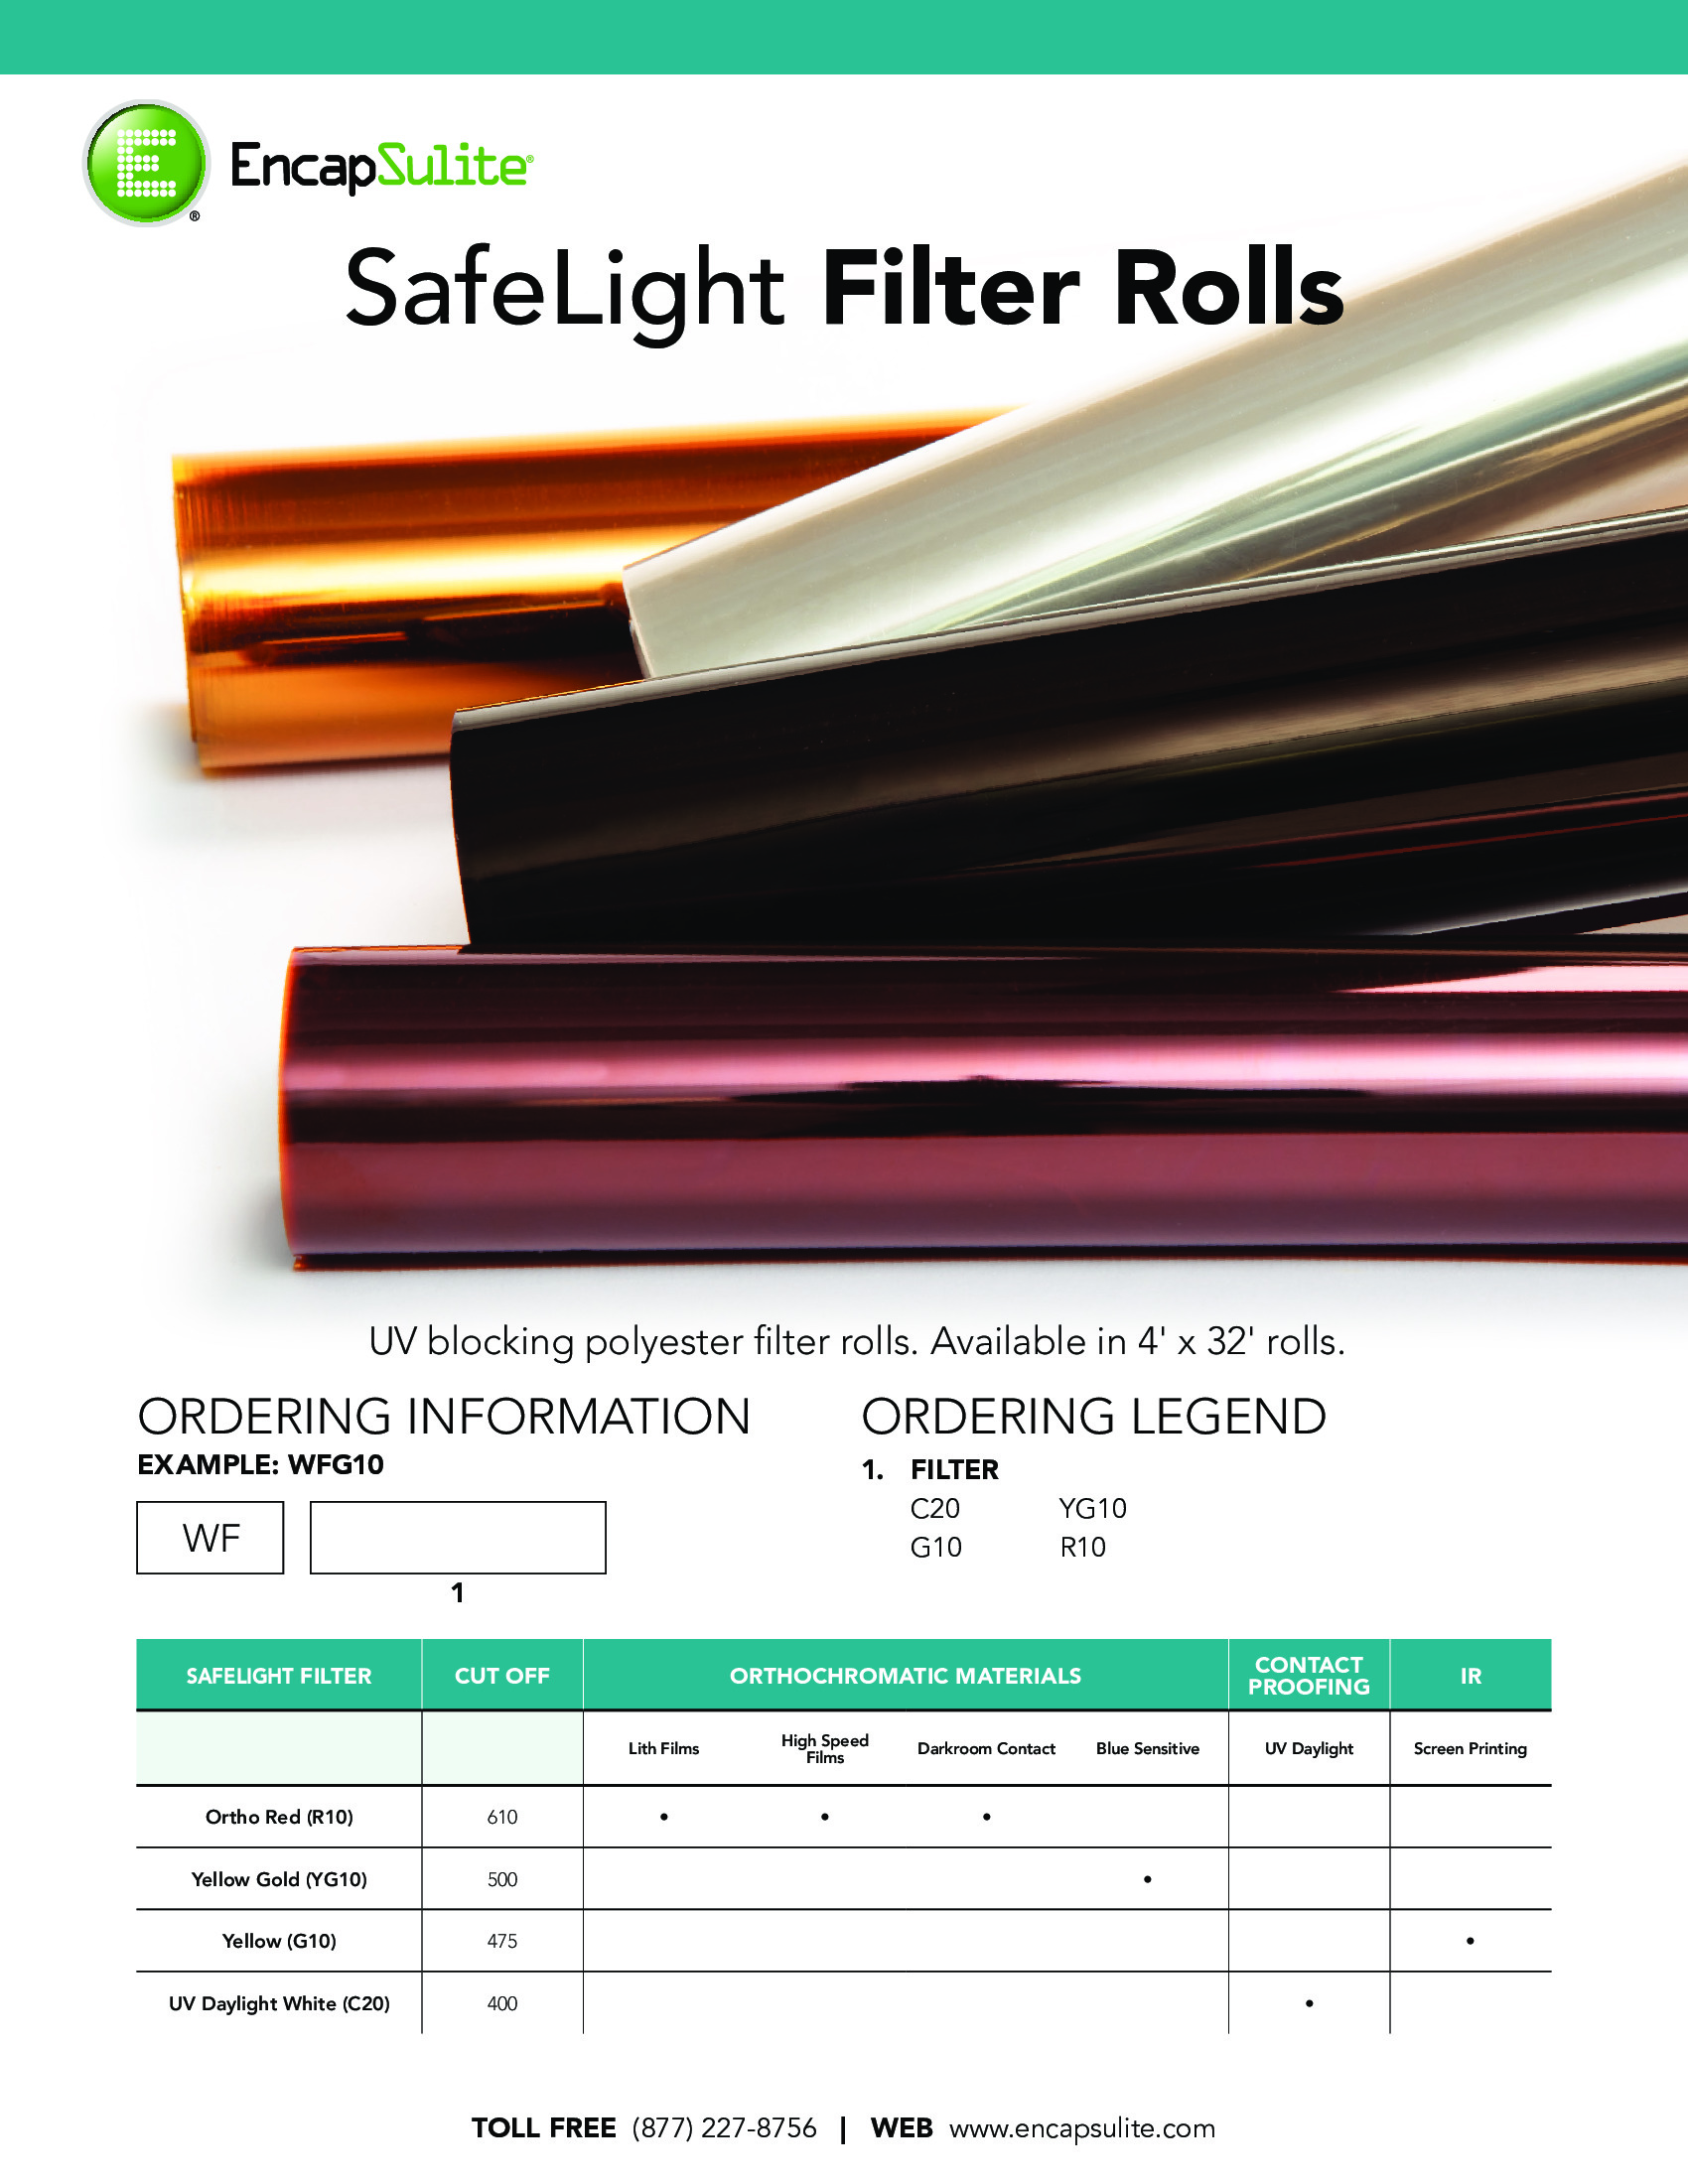 SafeLight Filter Roll Specification